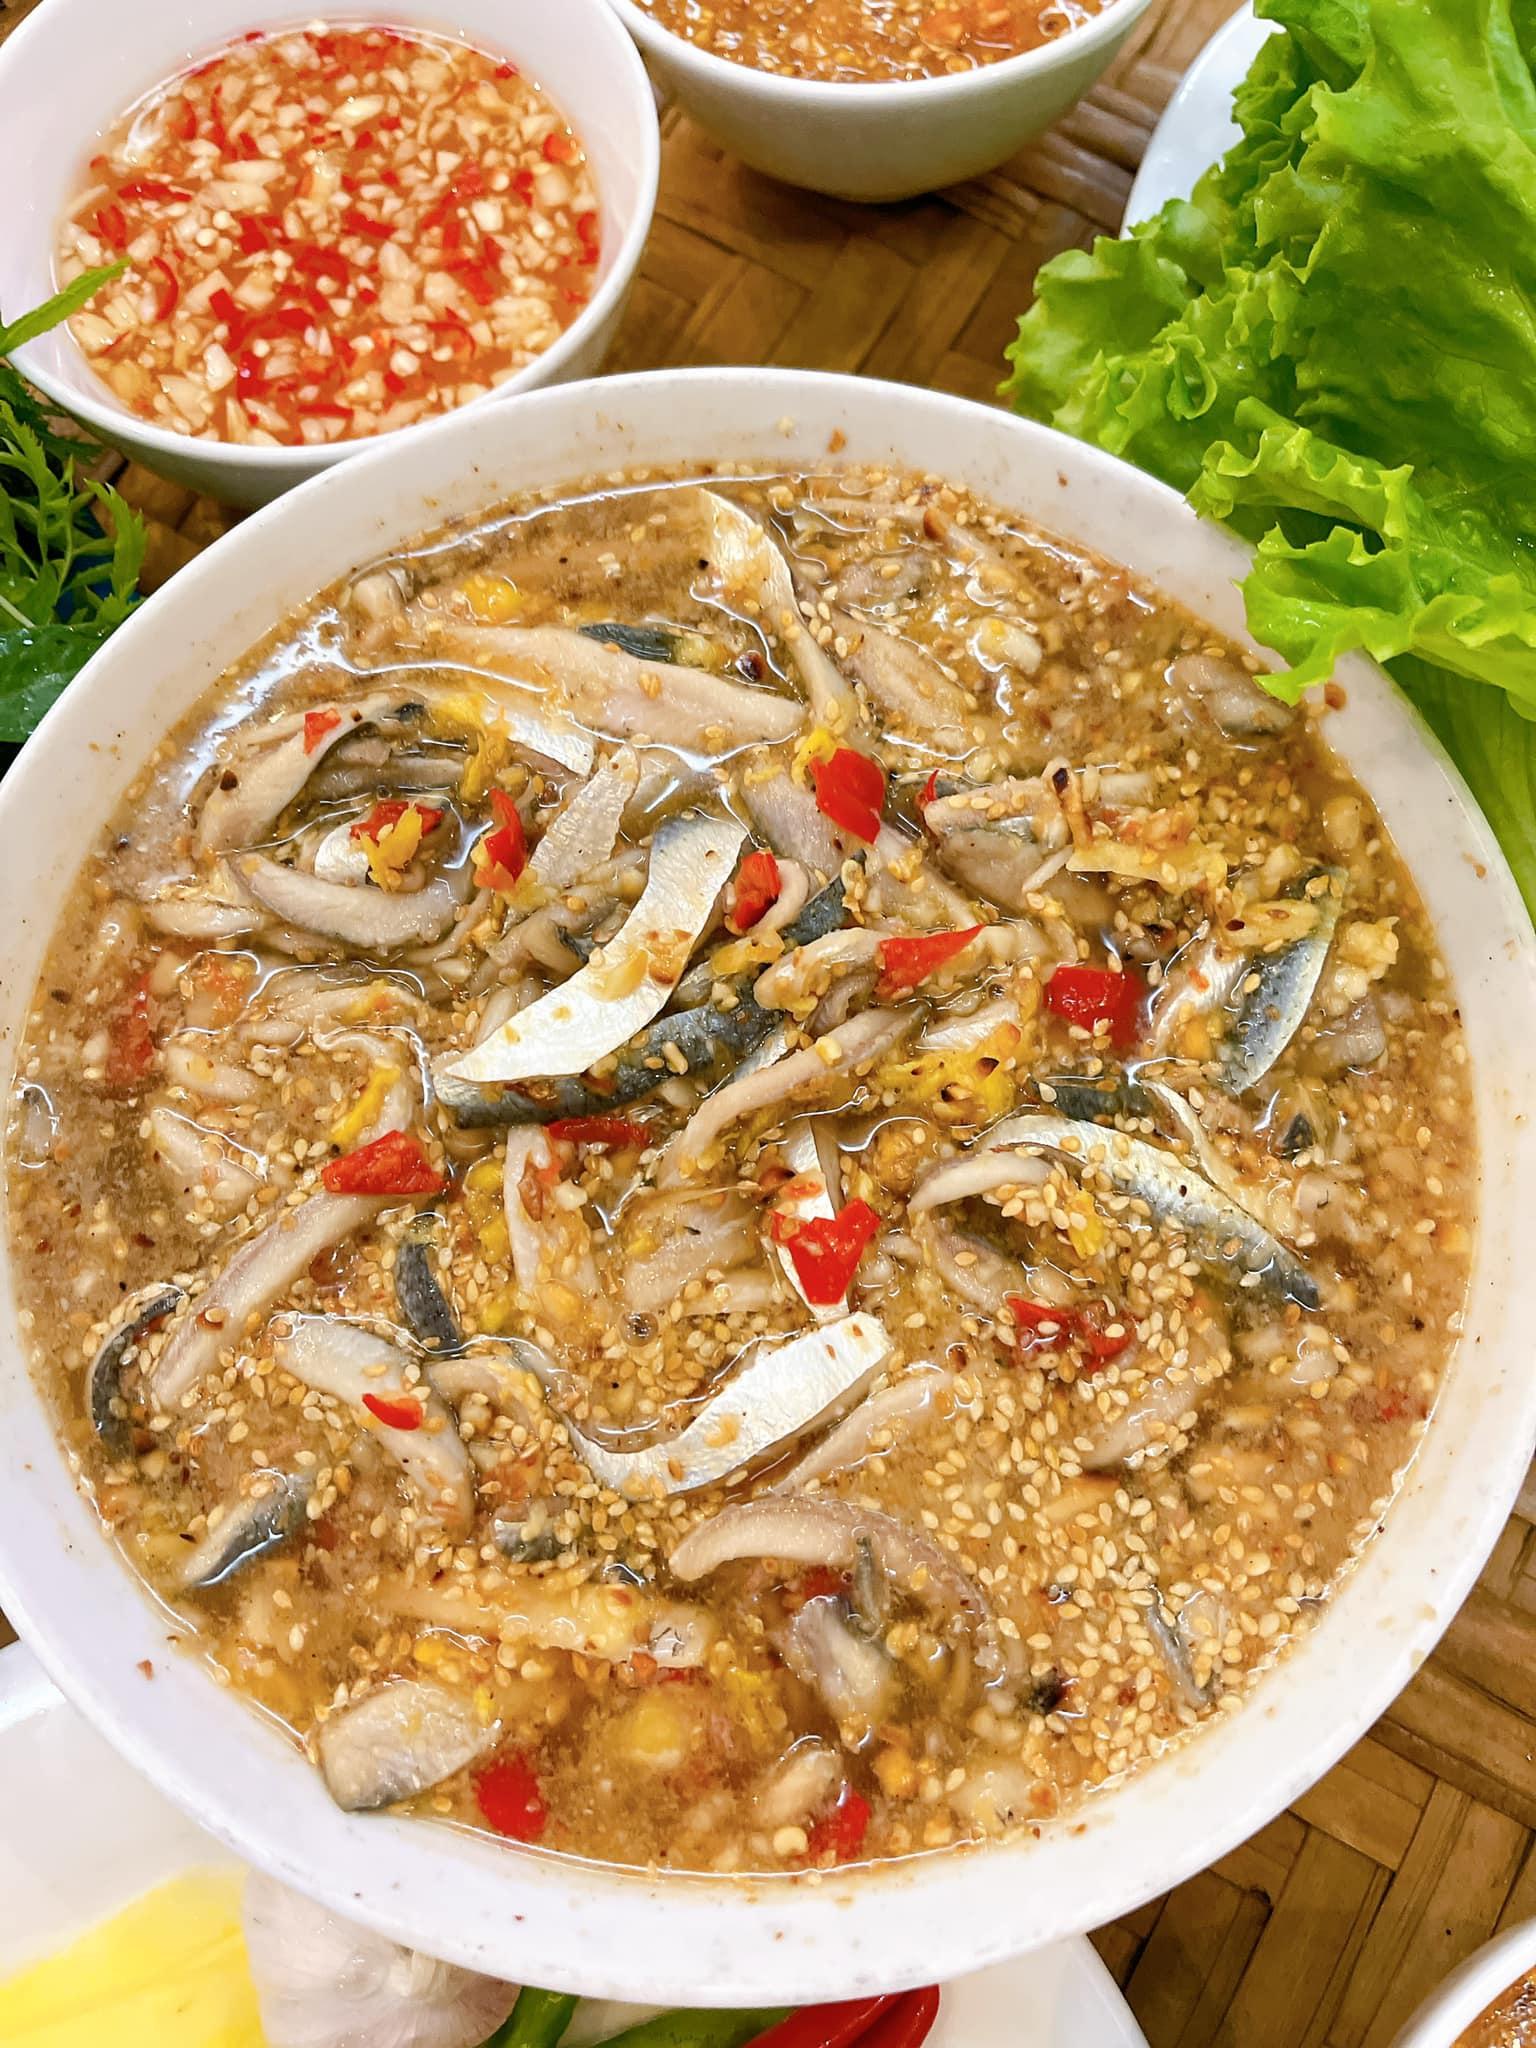 Đặc sản cá trích "ăn tươi nuốt sống" nổi tiếng ở Đà Nẵng - 5